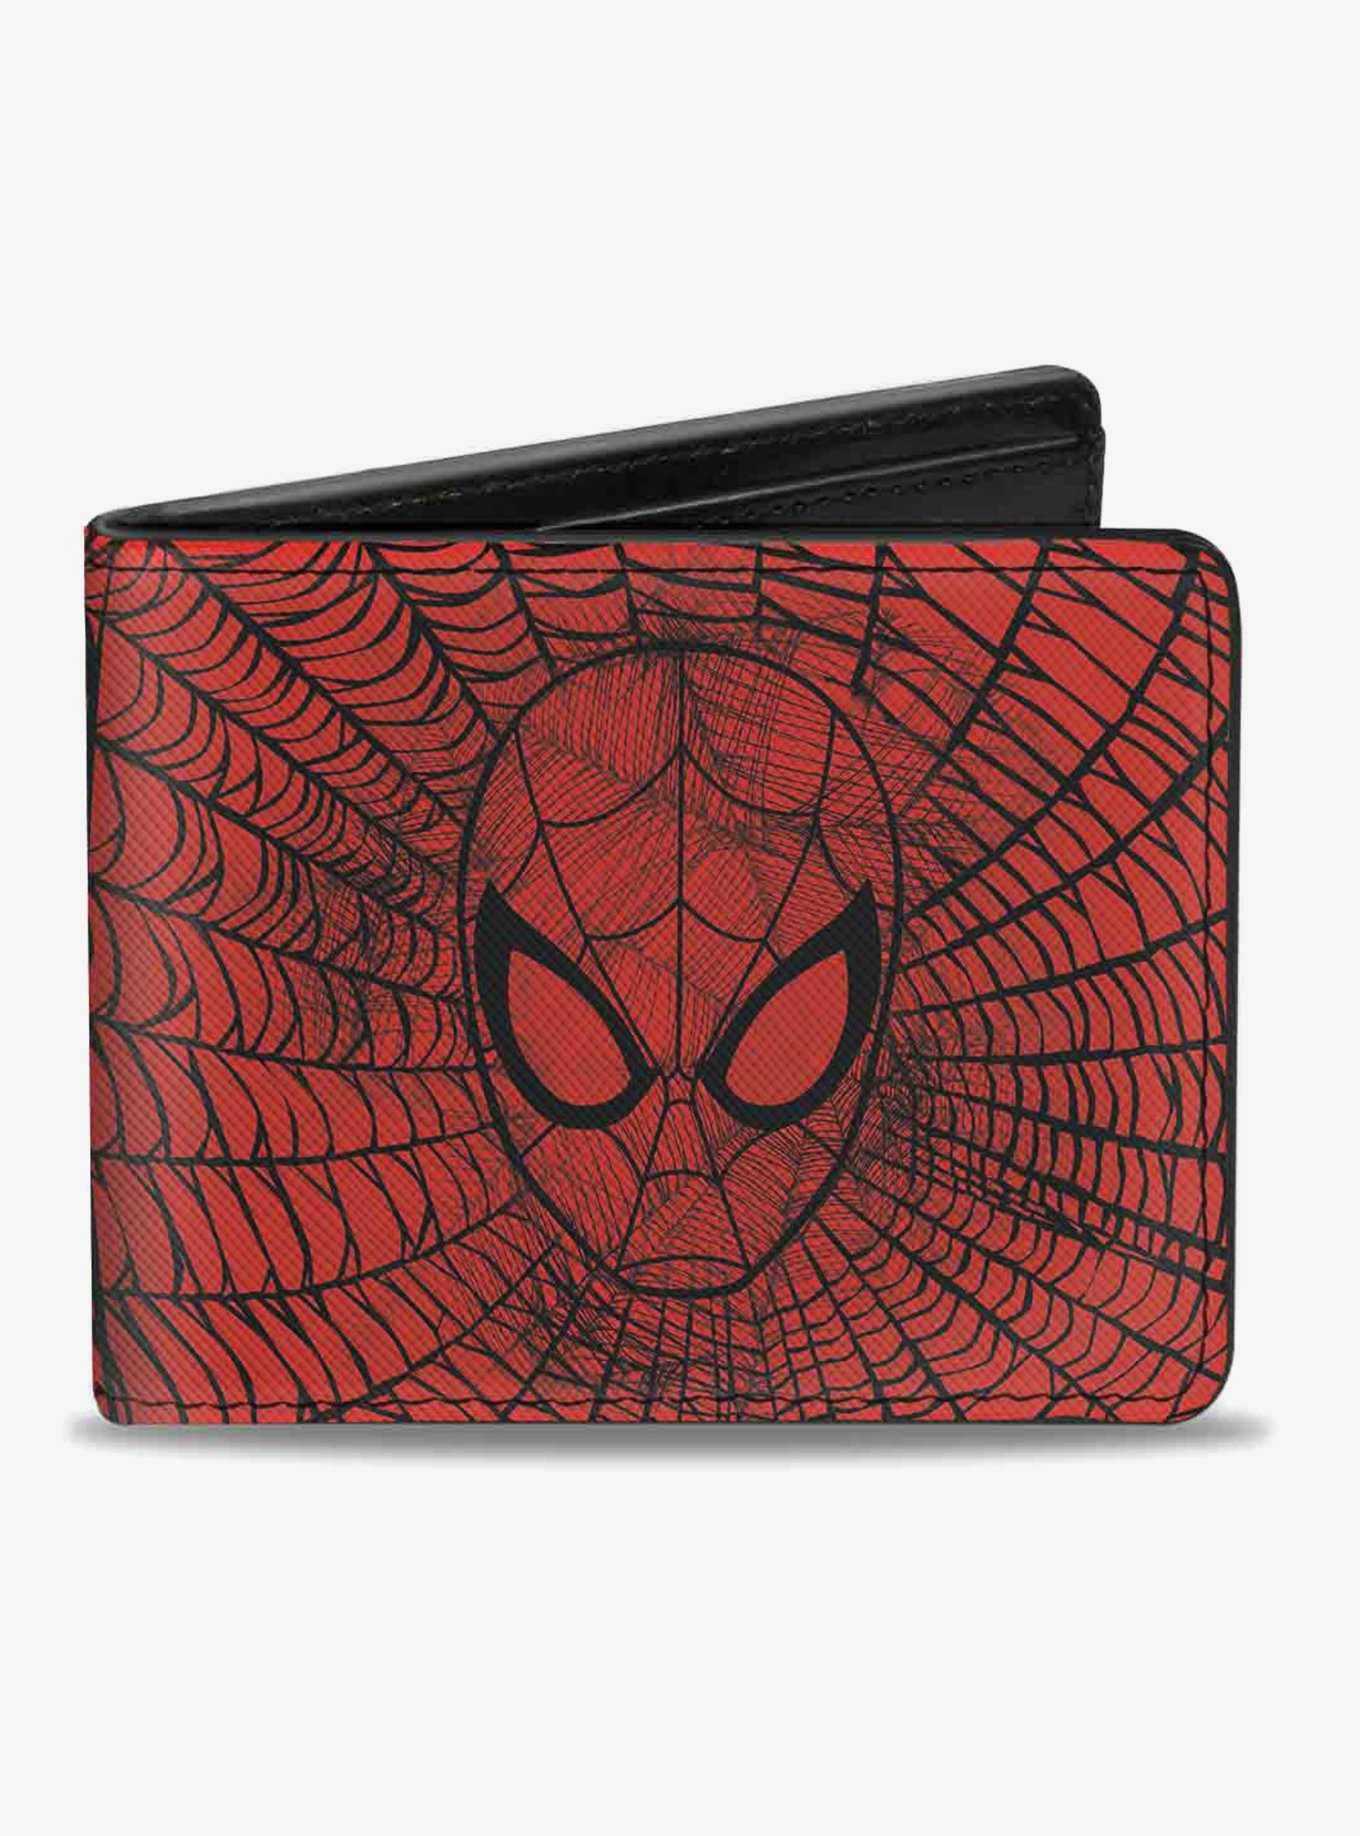 Marvel Spider-Man Face Web Sketch Bi-Fold Wallet, , hi-res